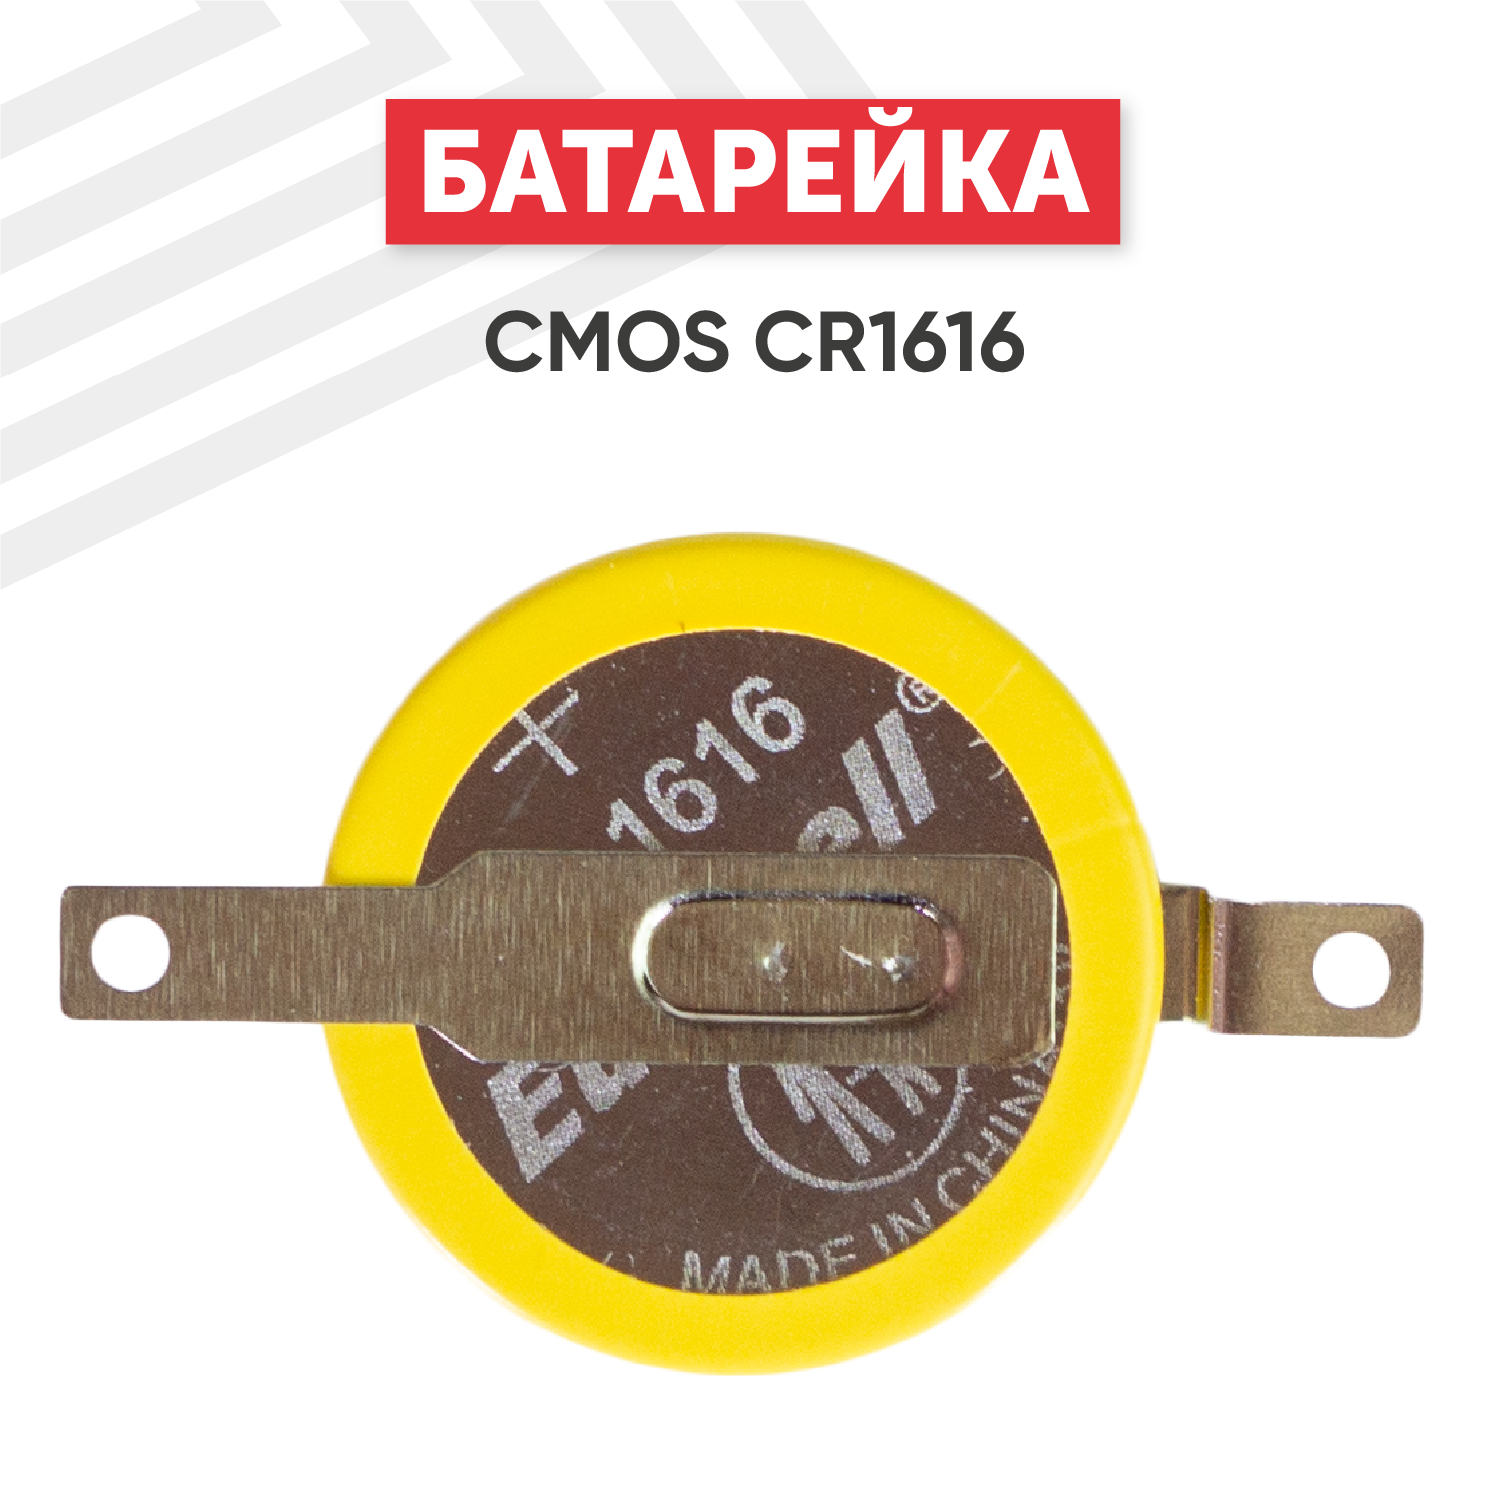 Батарейка (элемент питания таблетка) CMOS CR1616 / CR 1616 3В 50мАч для часов игрушек сигнализации фонарей брелоков